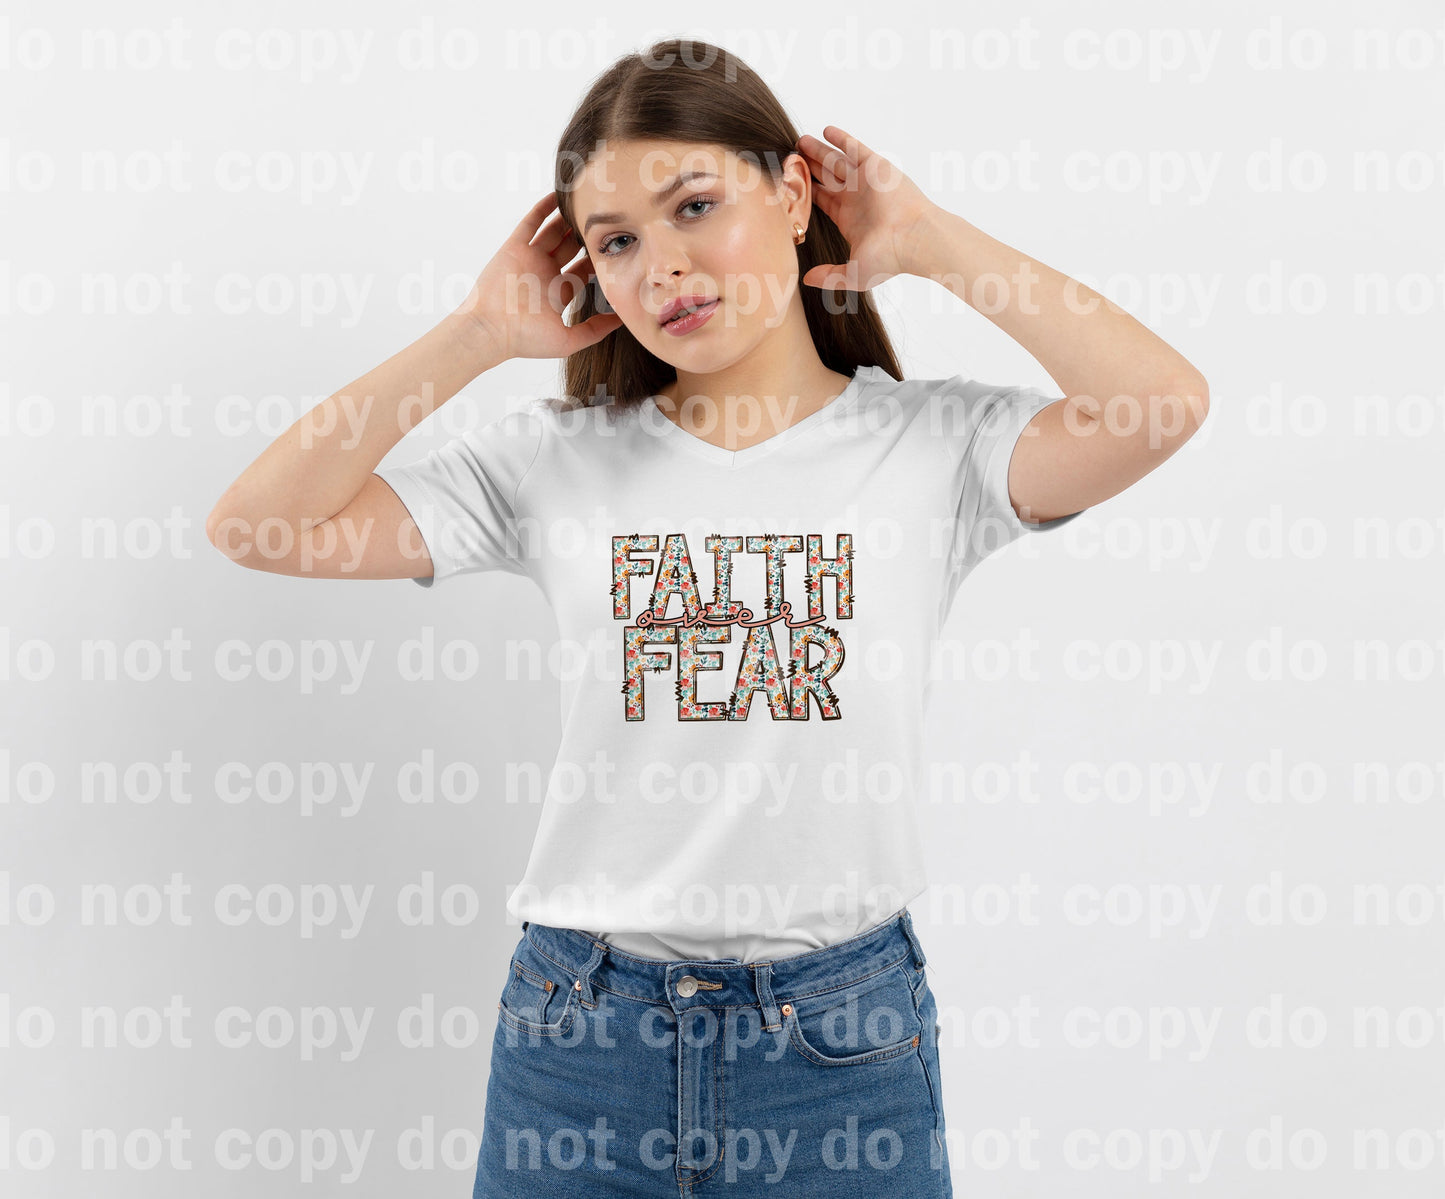 Faith Over Fear Dream Print or Sublimation Print